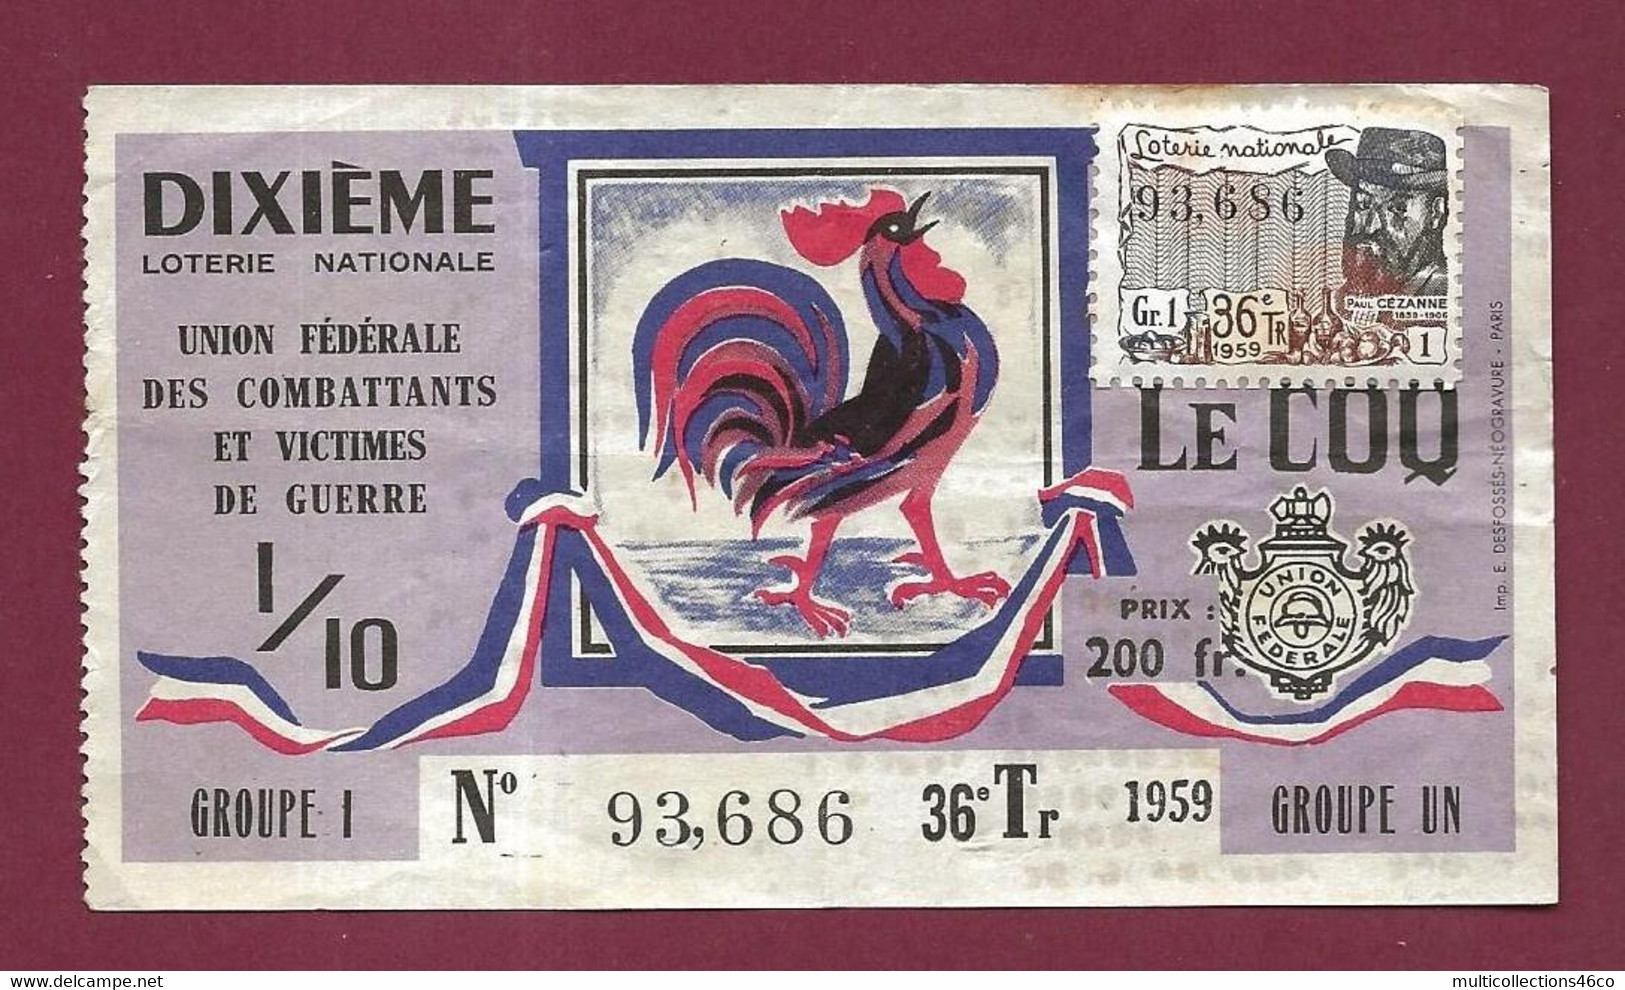 301121 - BILLET DE LOTERIE 1959  1/10 LE COQ DIXIEME 200 Fr Gr1 36e Tr 93686 Combattant Victime De Guerre - Billetes De Lotería